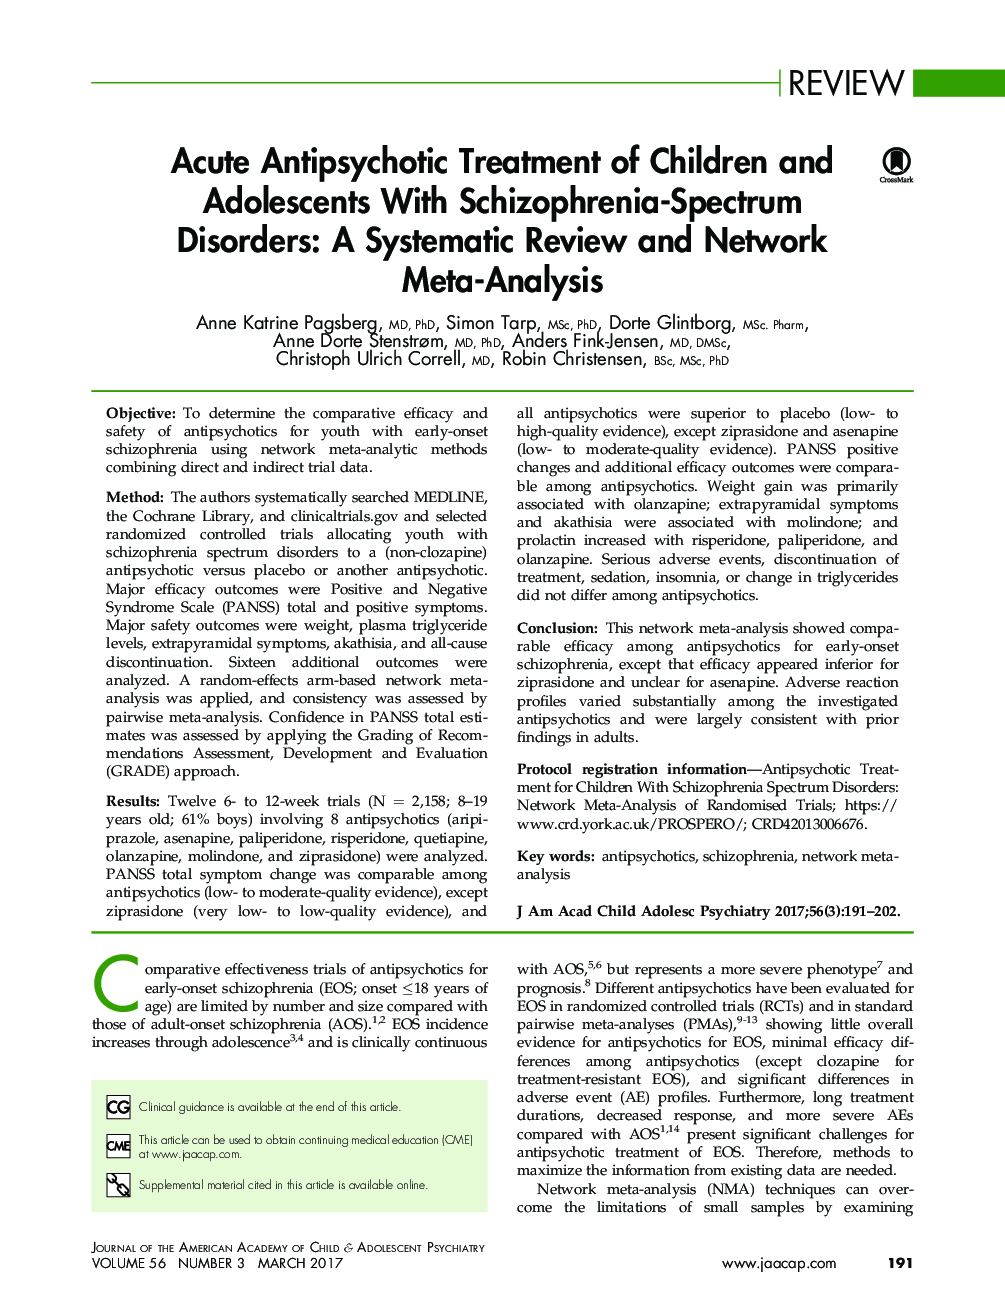 درمان ضد پیری آتی در کودکان و نوجوانان مبتلا به اختلالات اسکیزوفرنی: یک بررسی منظم و متاآنالیز شبکه 